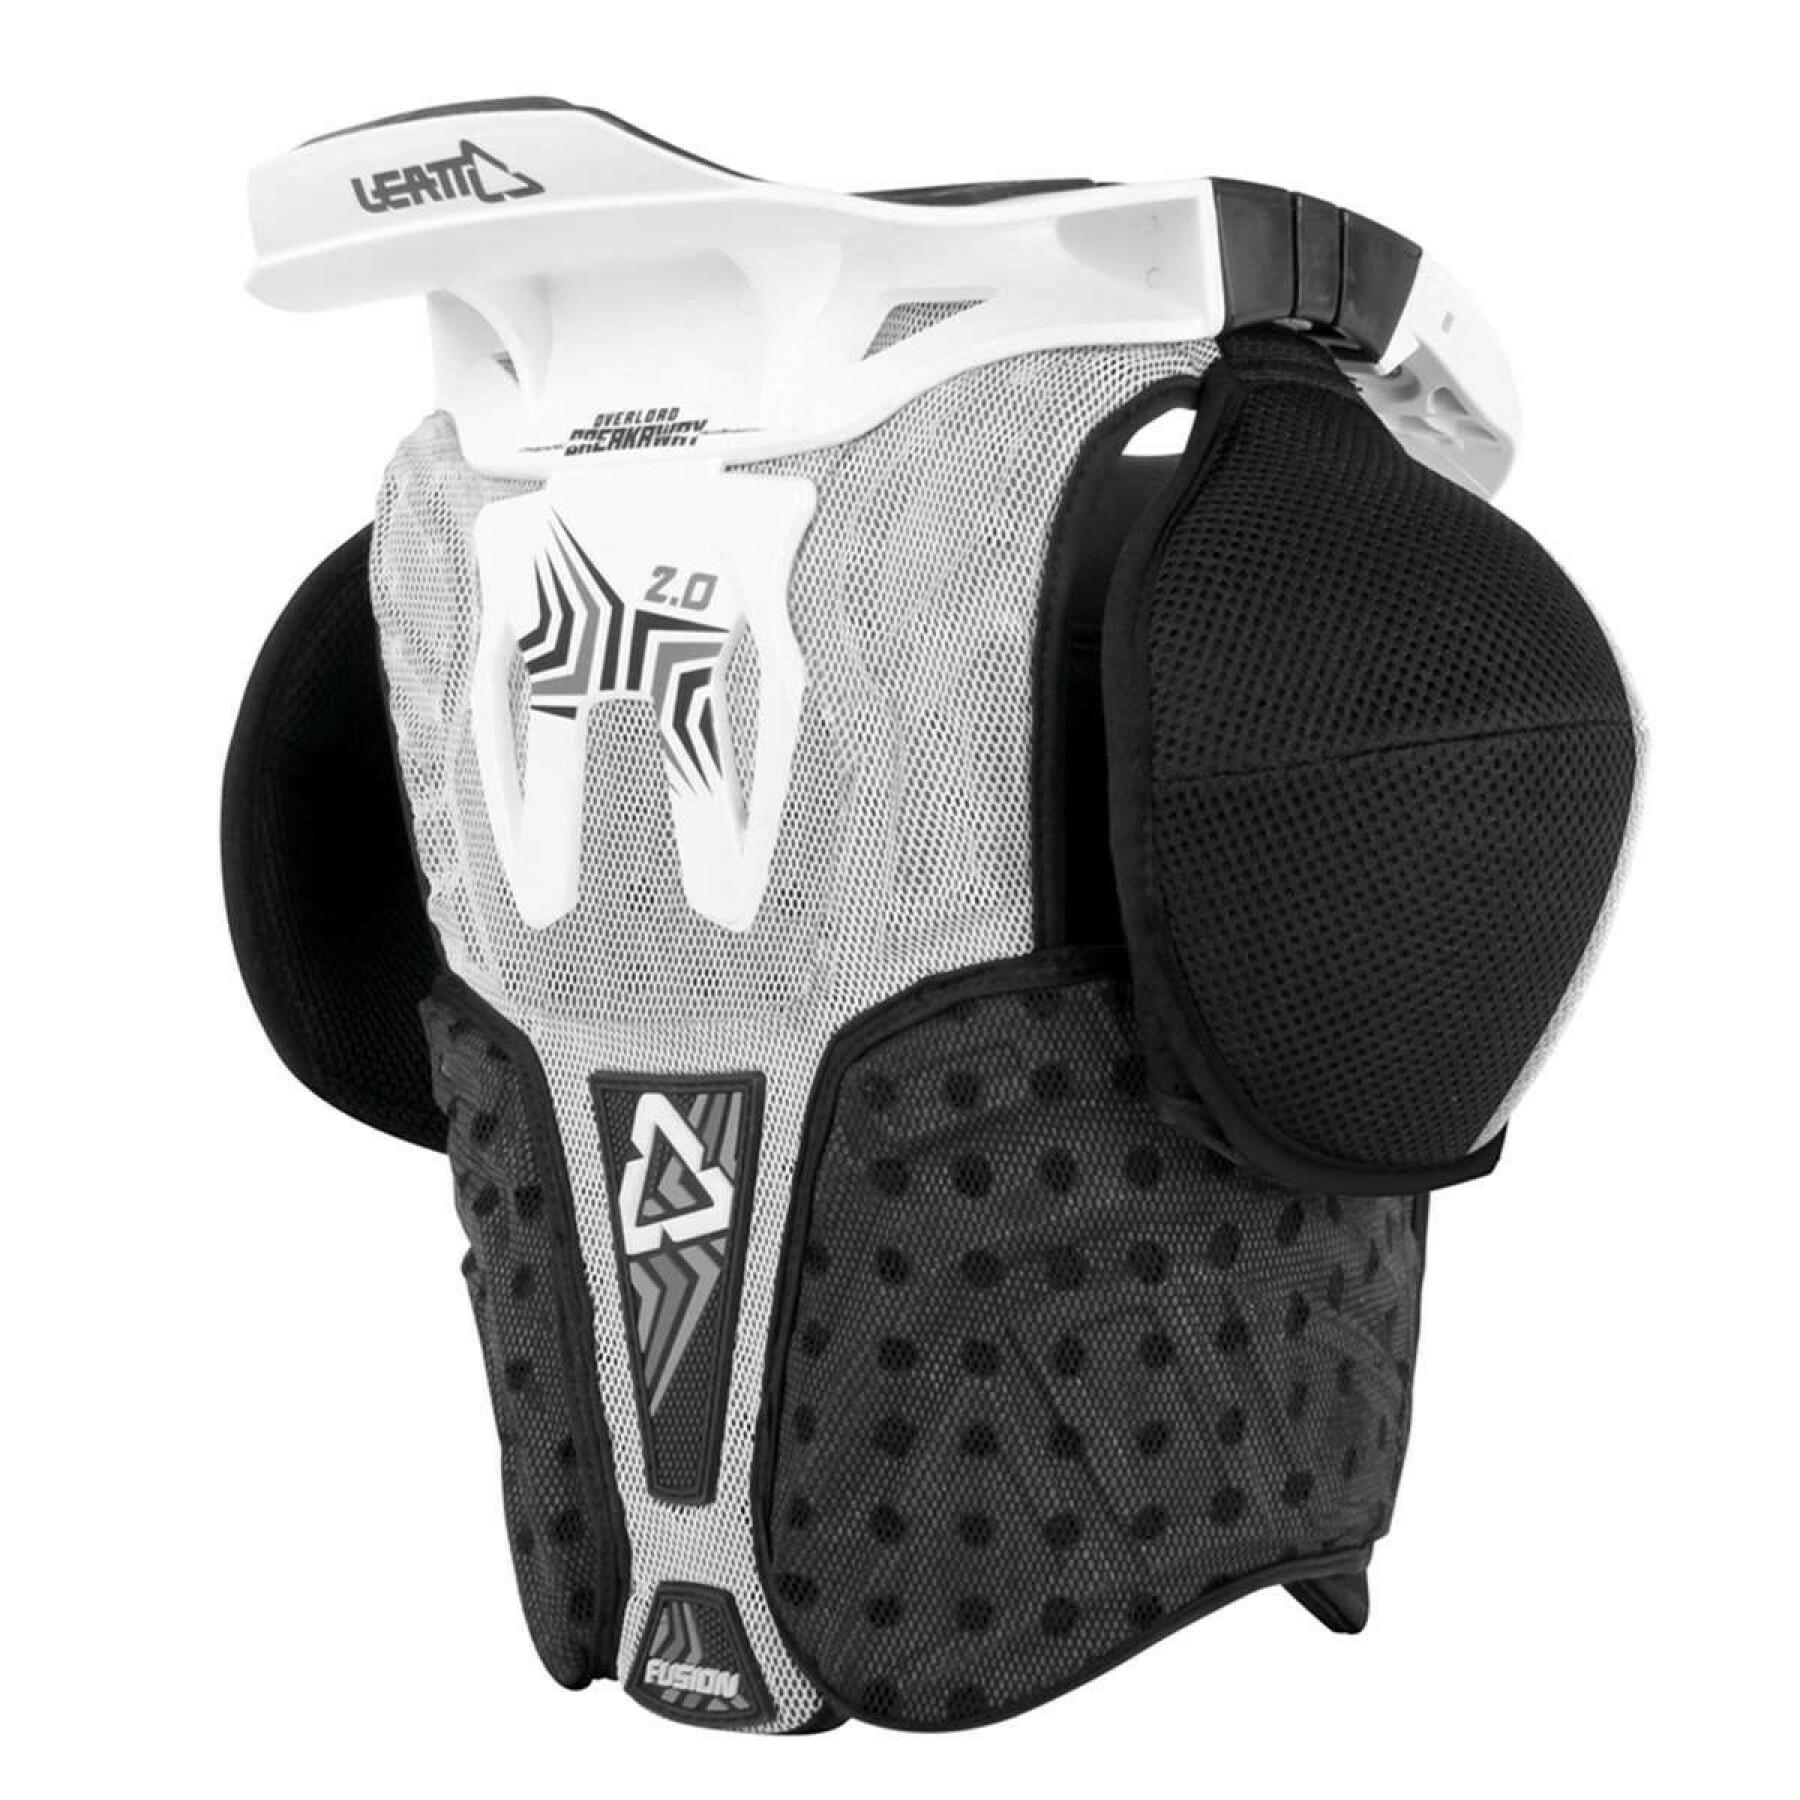 Protector pectoral de moto para niños Leatt fusion vest 2.0